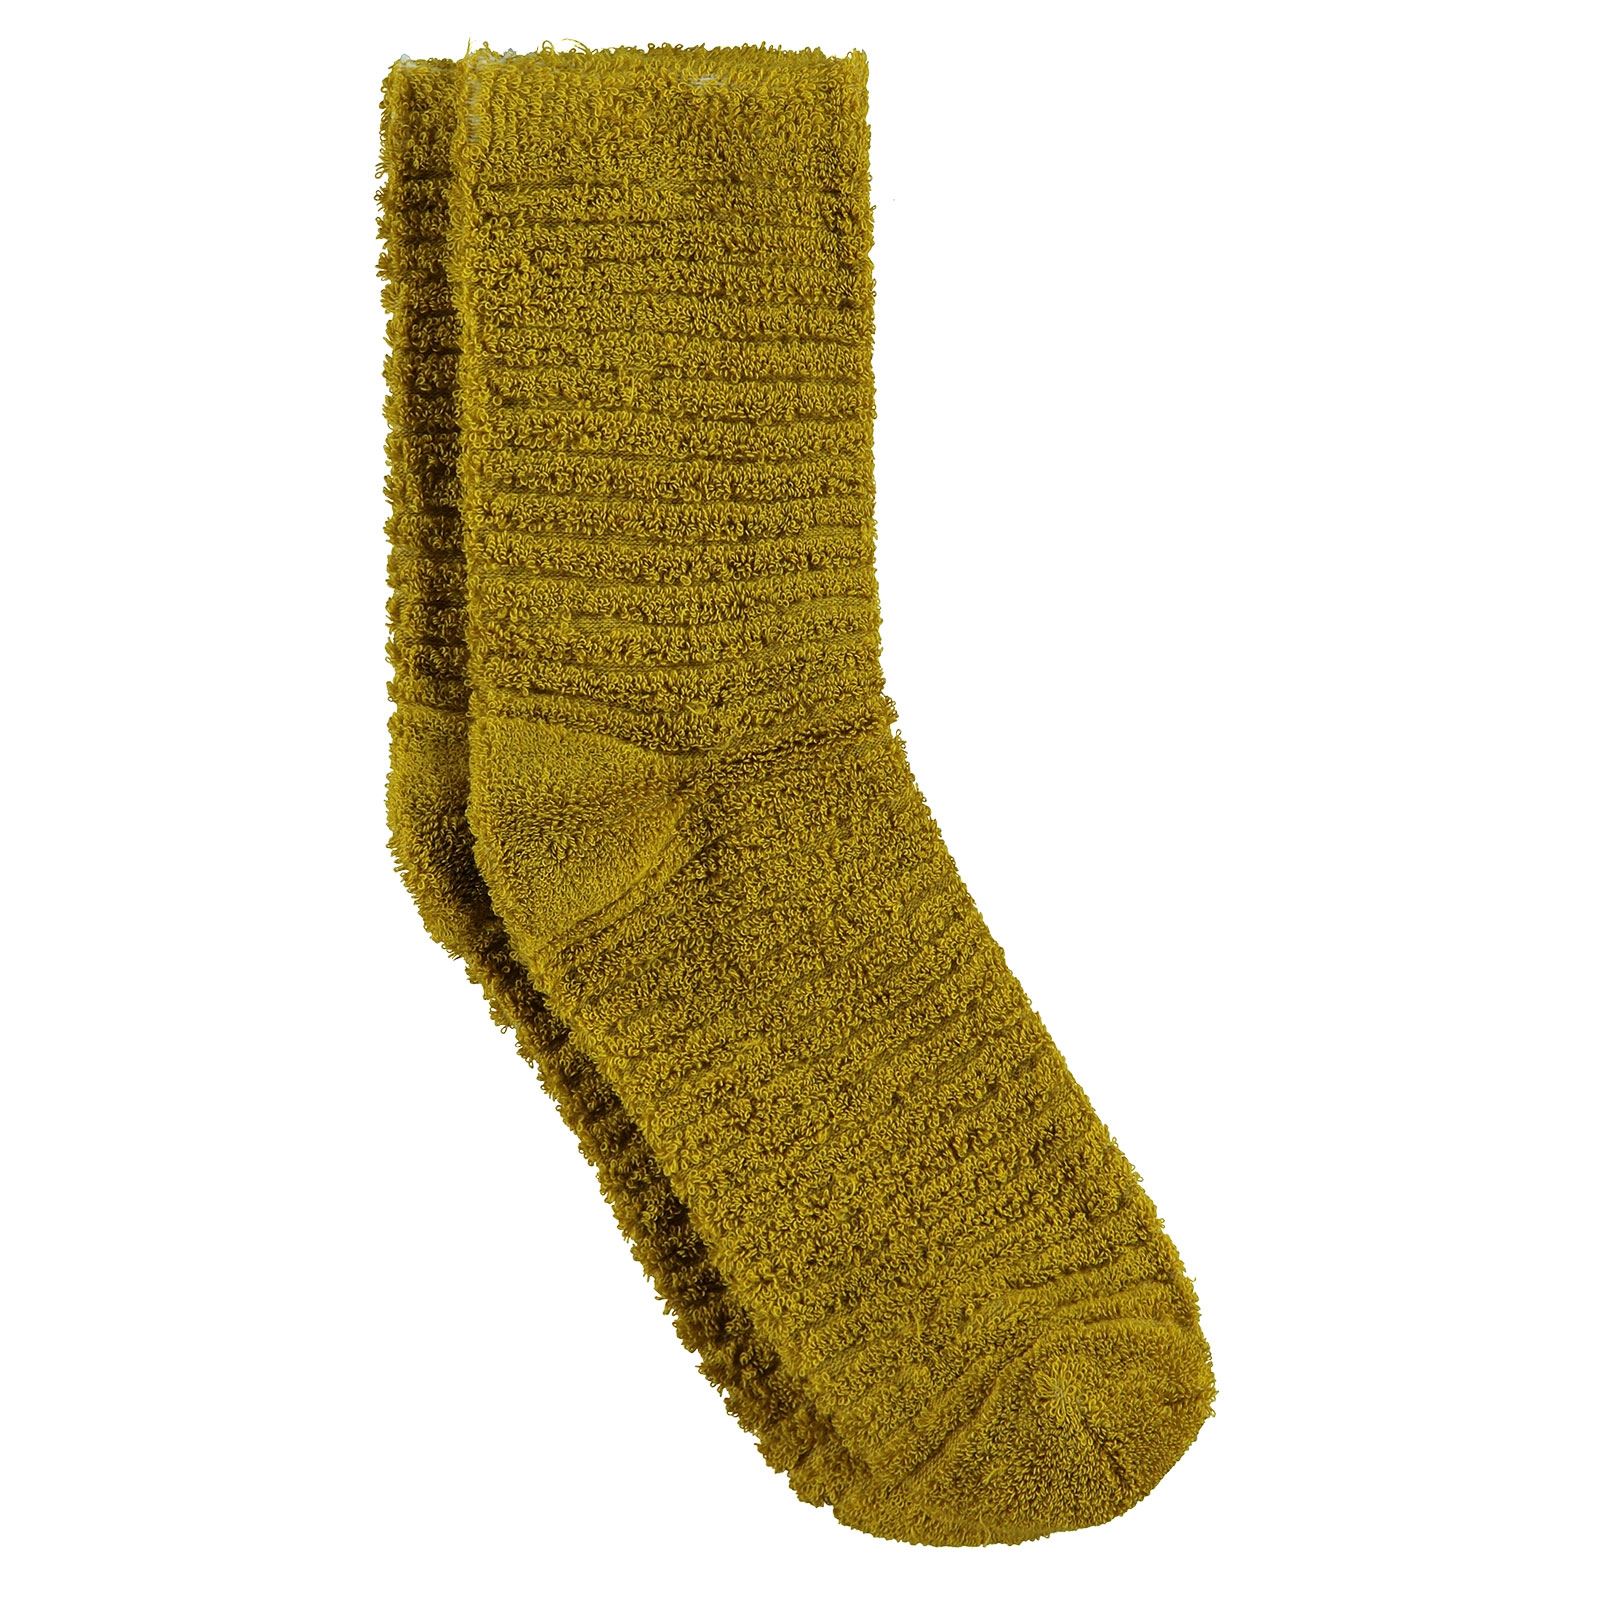 Bella Calze Kız Çocuk Ters Havlu Soket Çorap 36-40 Numara Hardal